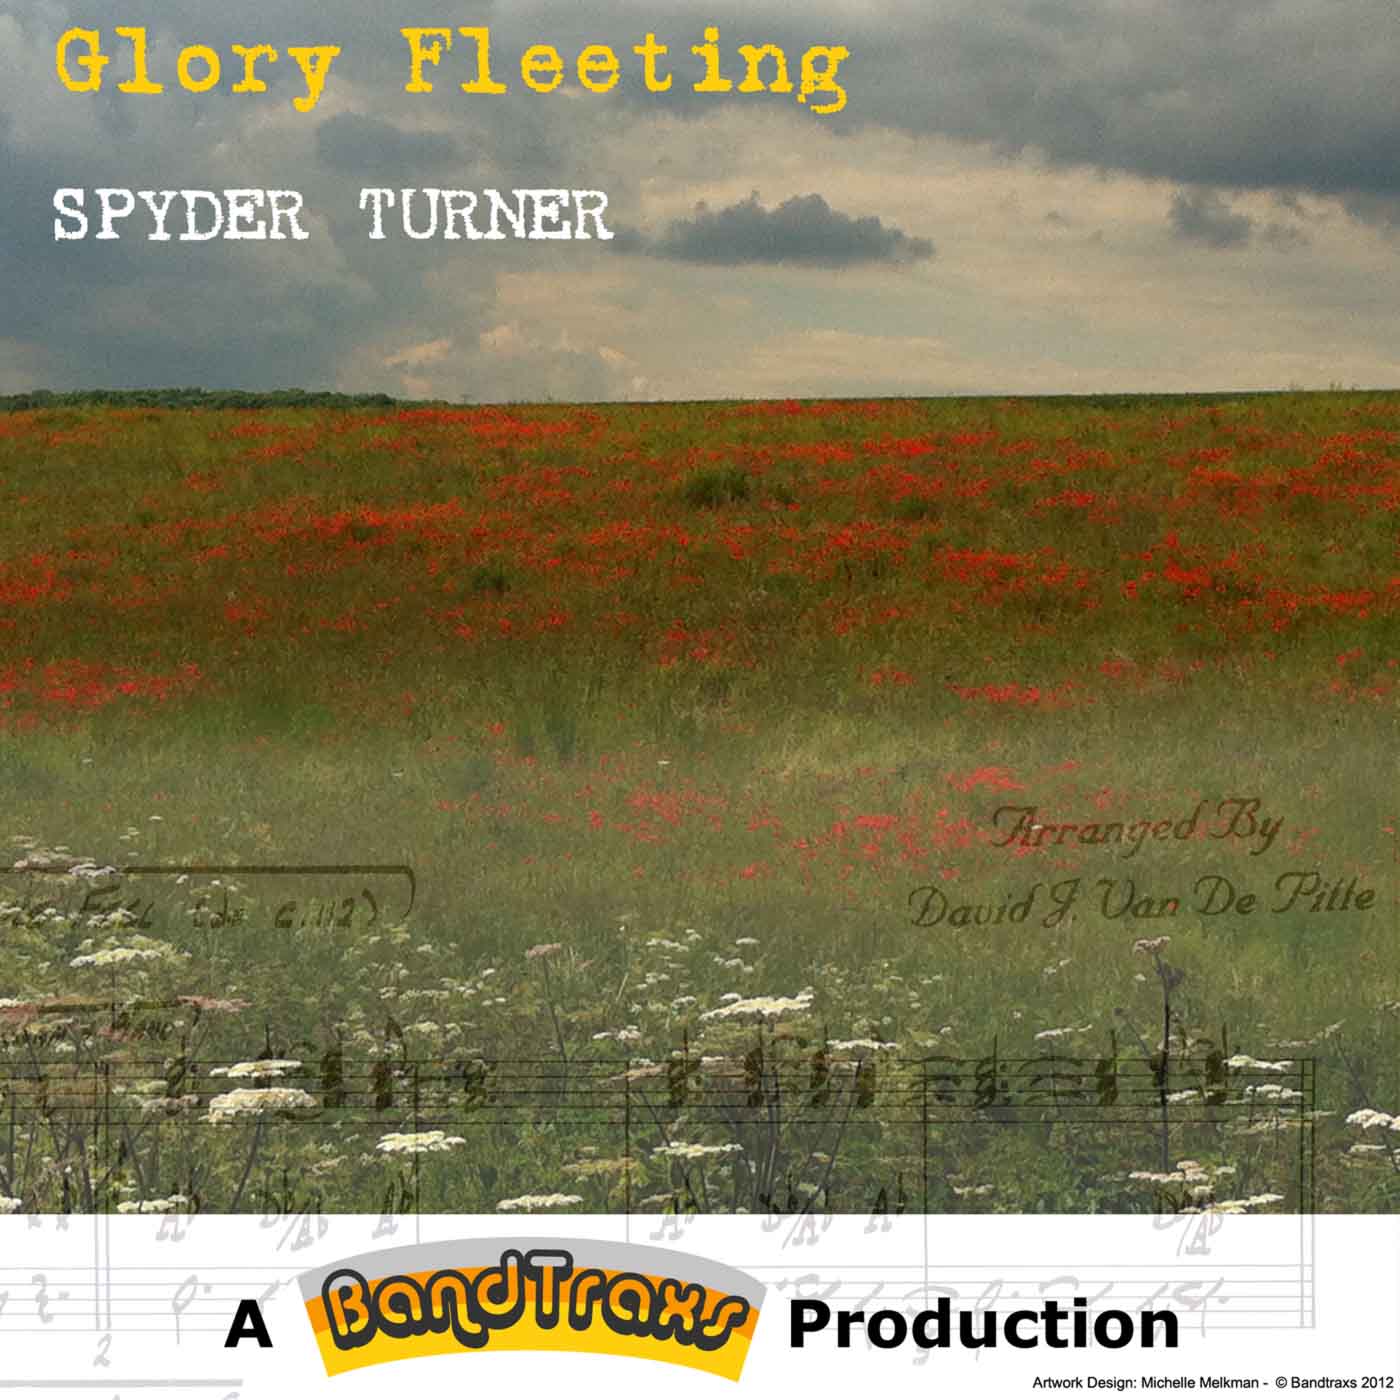 Spyder Turner sings "Glory fleeting"